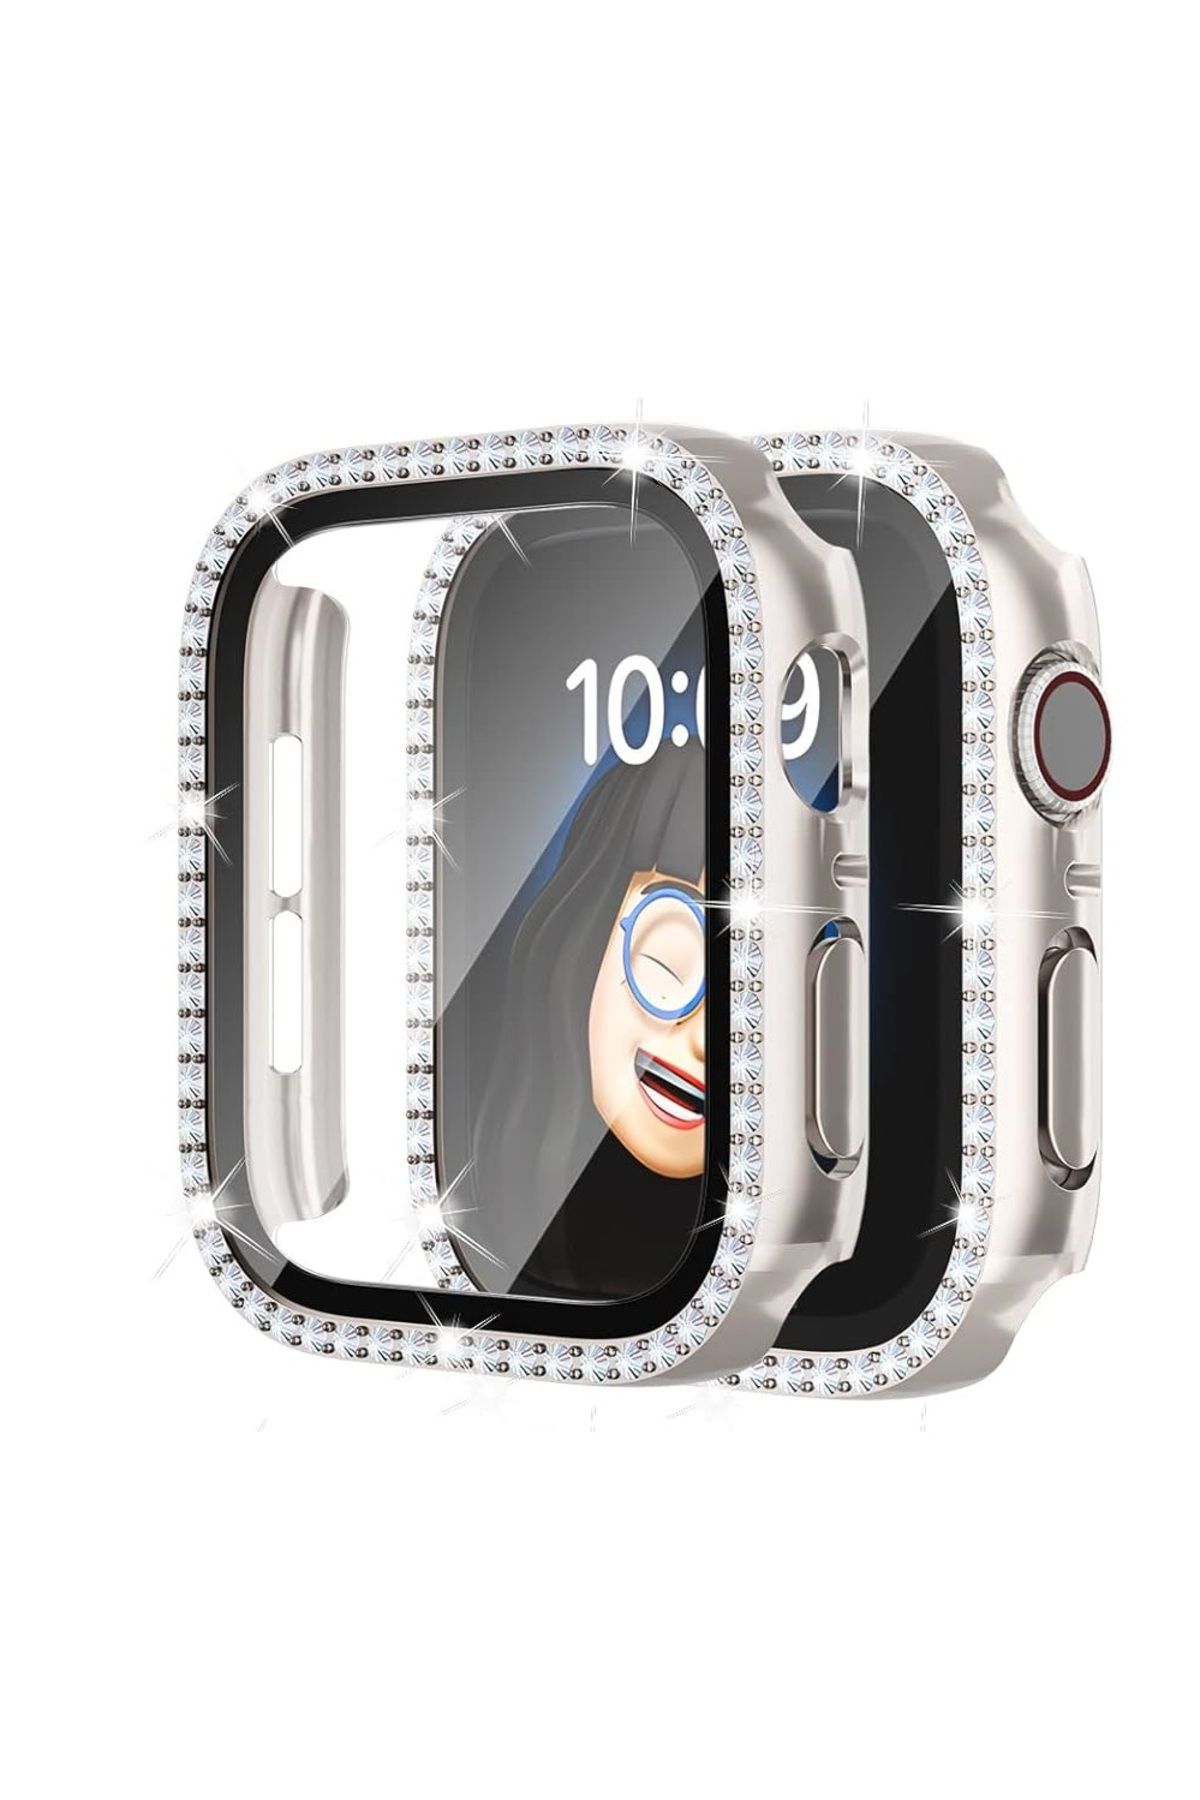 UnDePlus Apple Watch 7 8 9 41mm Ekran Koruyuculu Tek Sıra Kenar Taşlı Sert PC Kasa Koruyucu